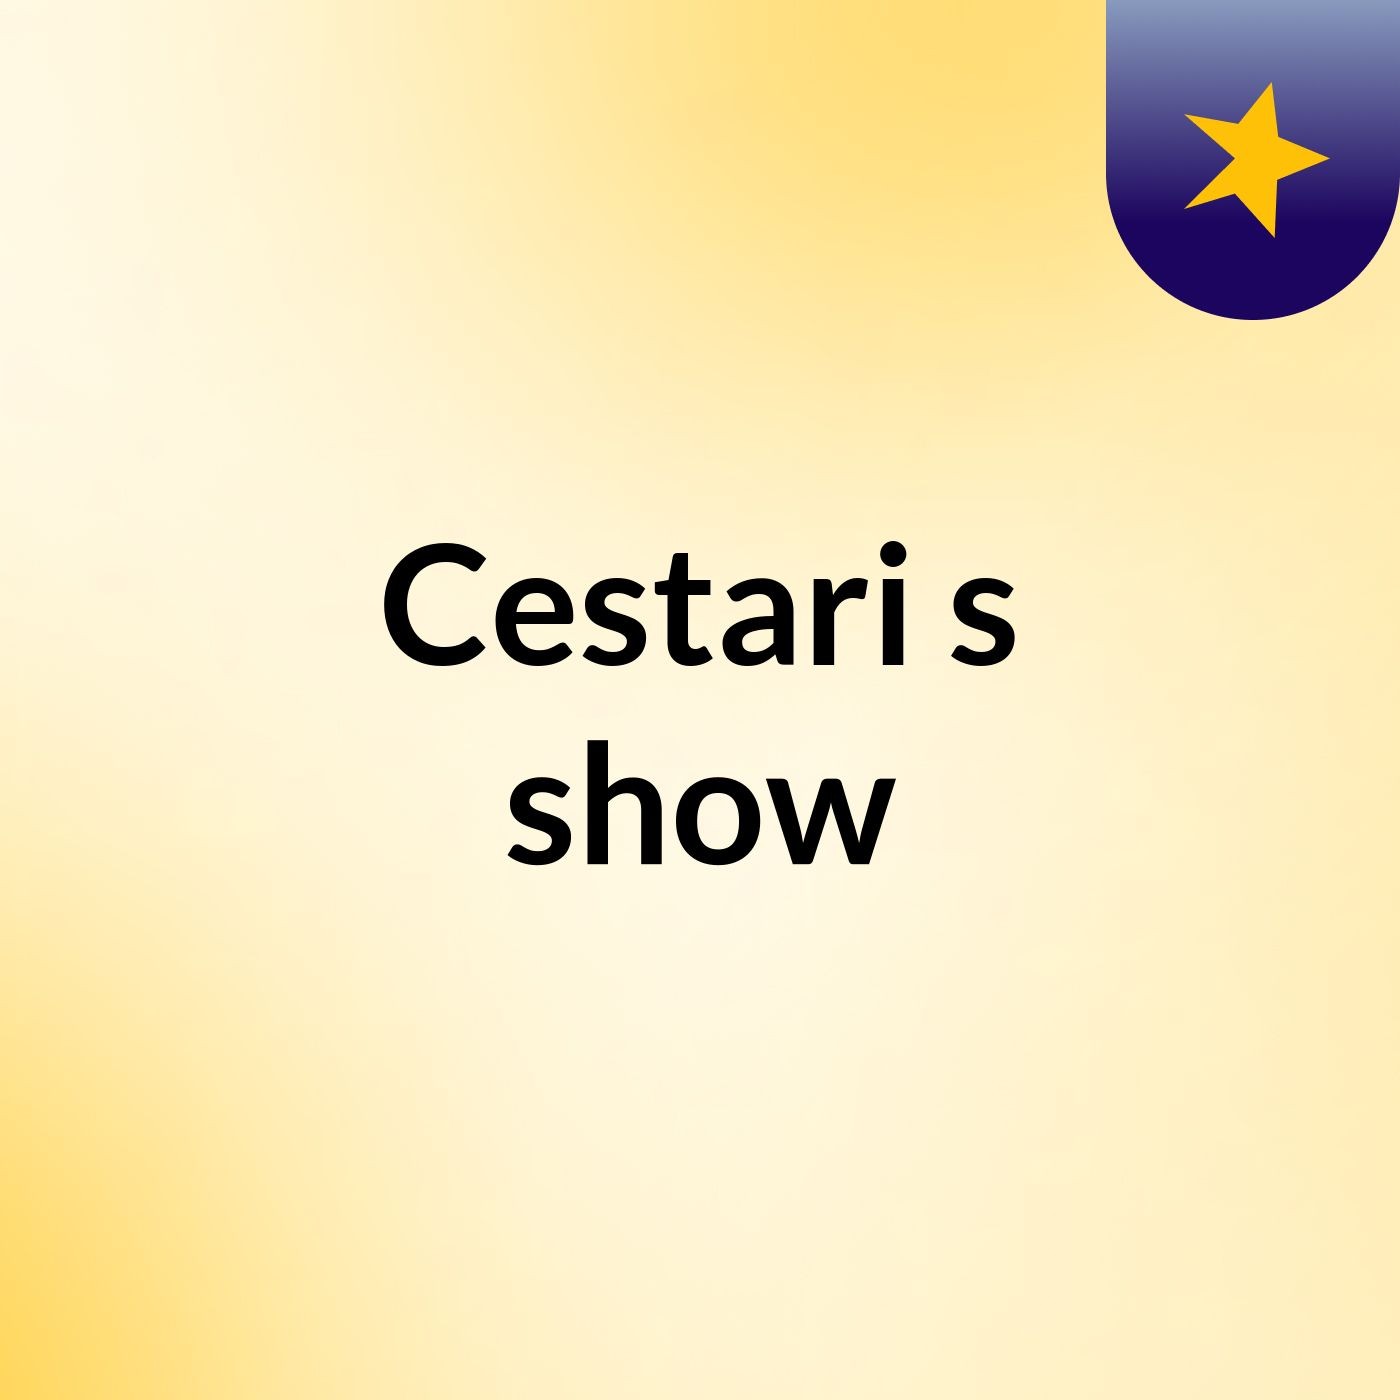 Cestari's show